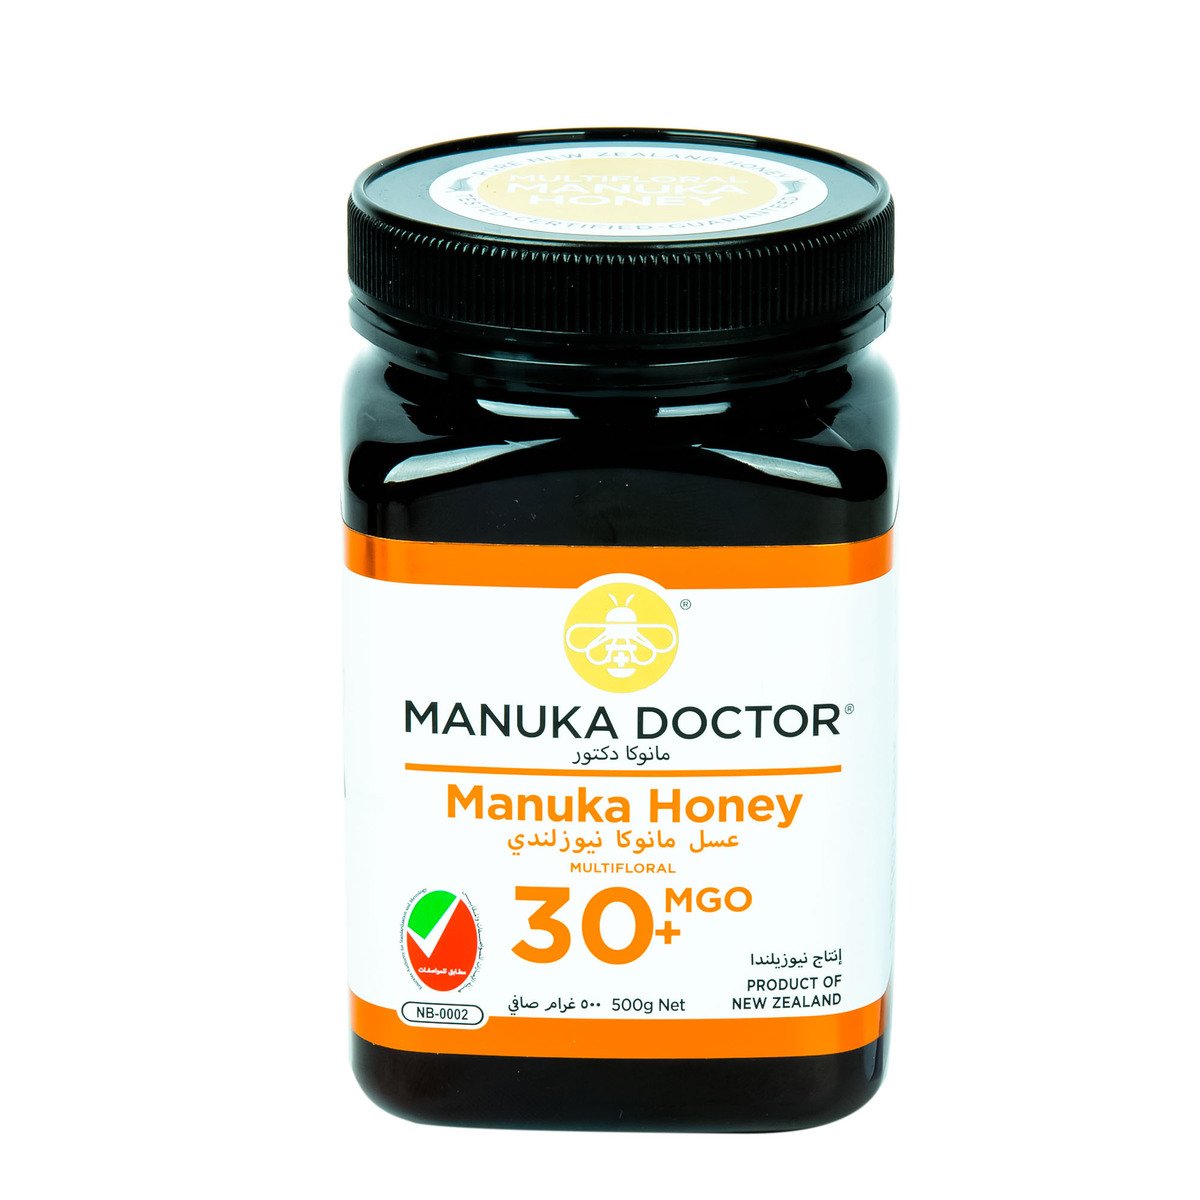 Manuka Doctor Honey Multifloral MGO 30+ 500 g